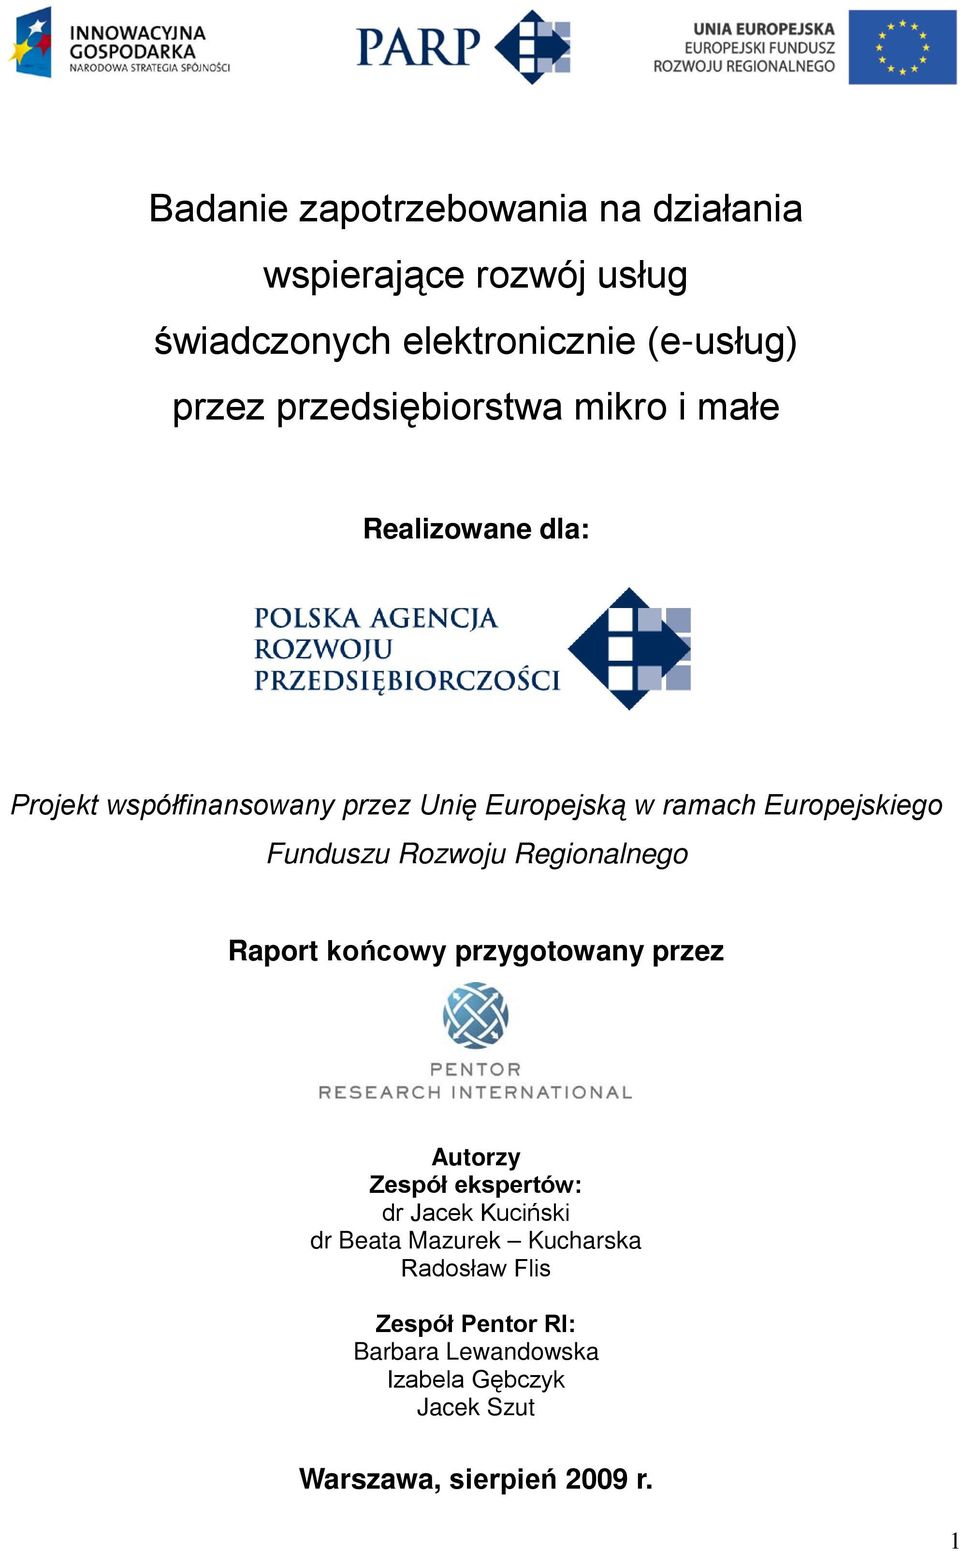 Funduszu Rozwoju Regionalnego Raport końcowy przygotowany przez Autorzy Zespół ekspertów: dr Jacek Kuciński dr Beata